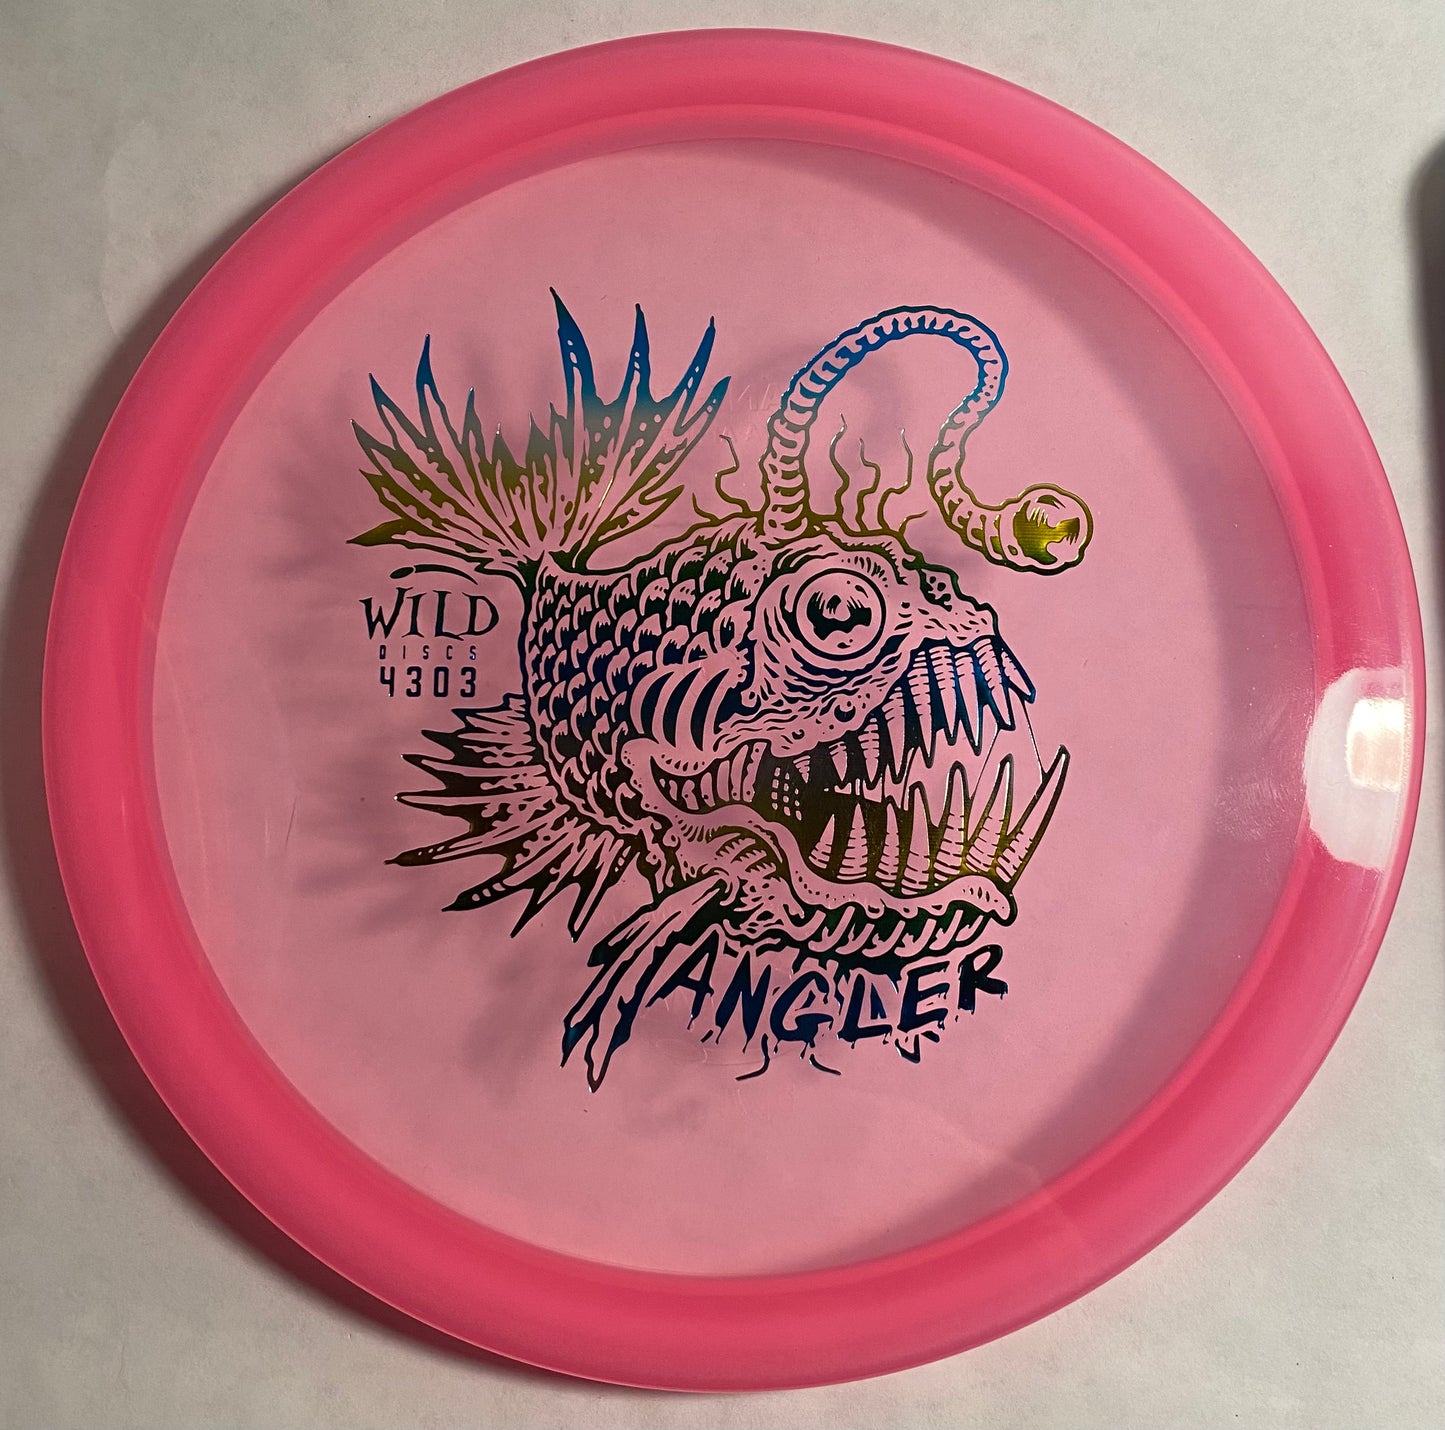 Wild Discs Angler - 9/10 - 175g